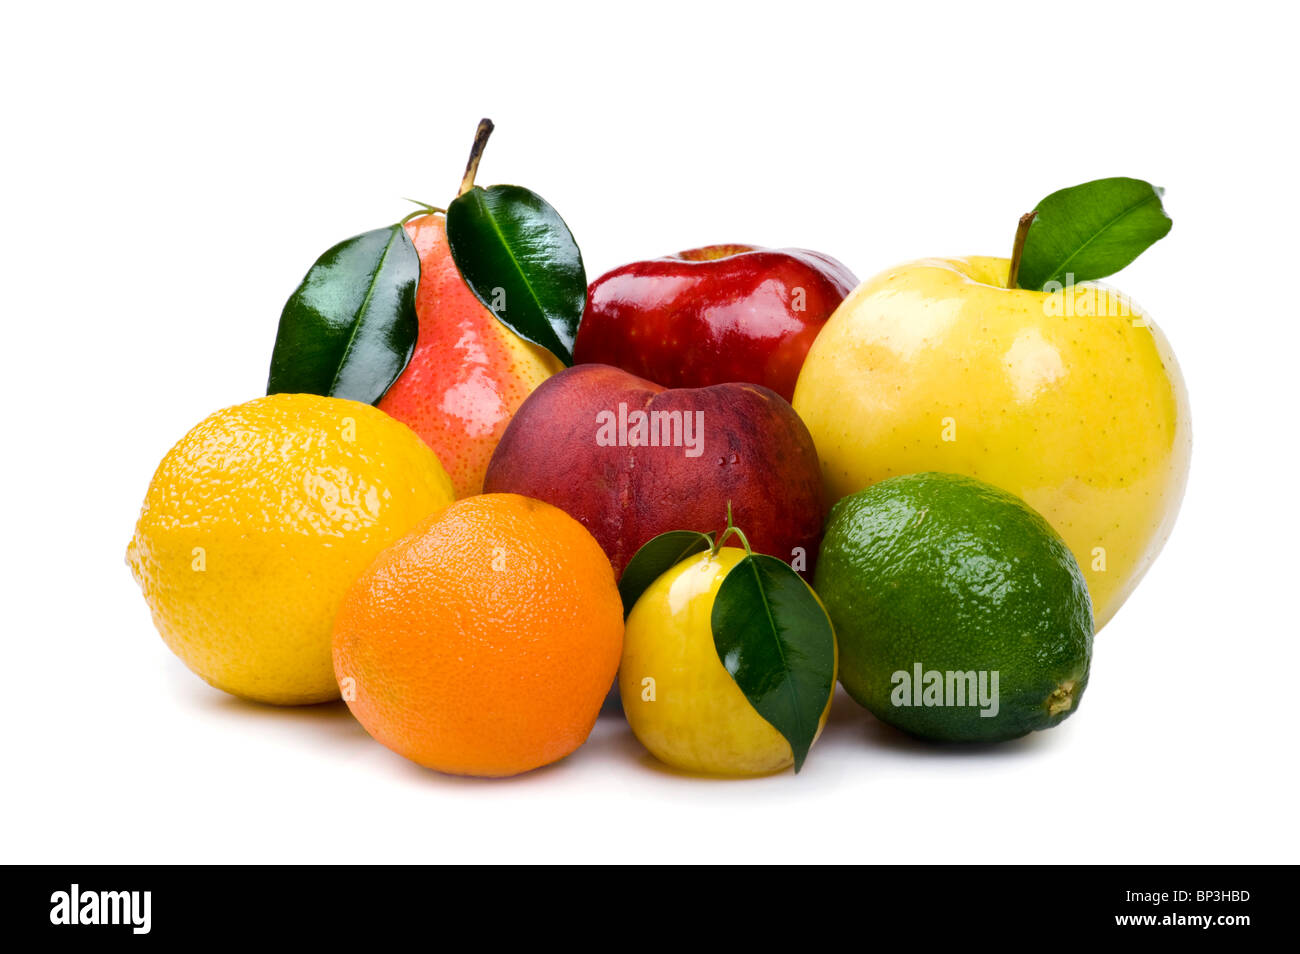 Objekt auf weiß - frisches Obst auf weißem Hintergrund Stockfoto